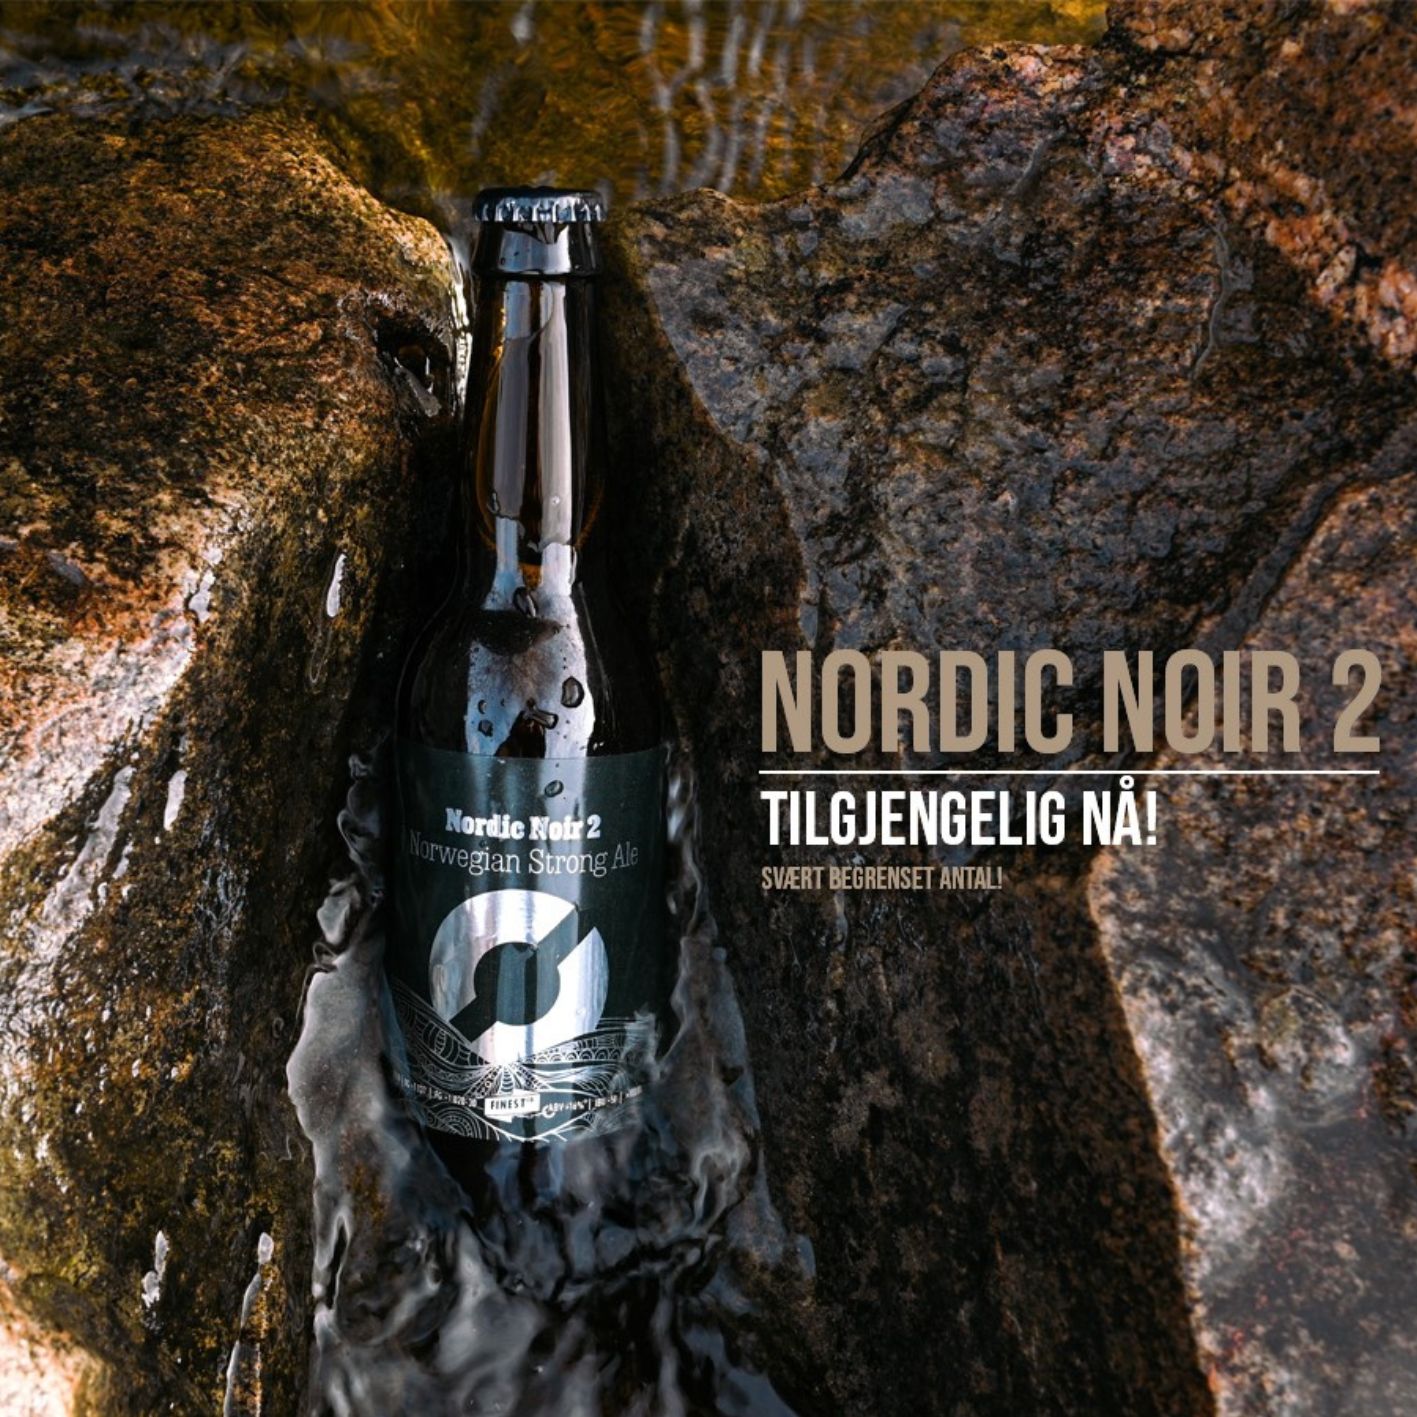 Nordic Noir 2 - Norwegian Strong Ale